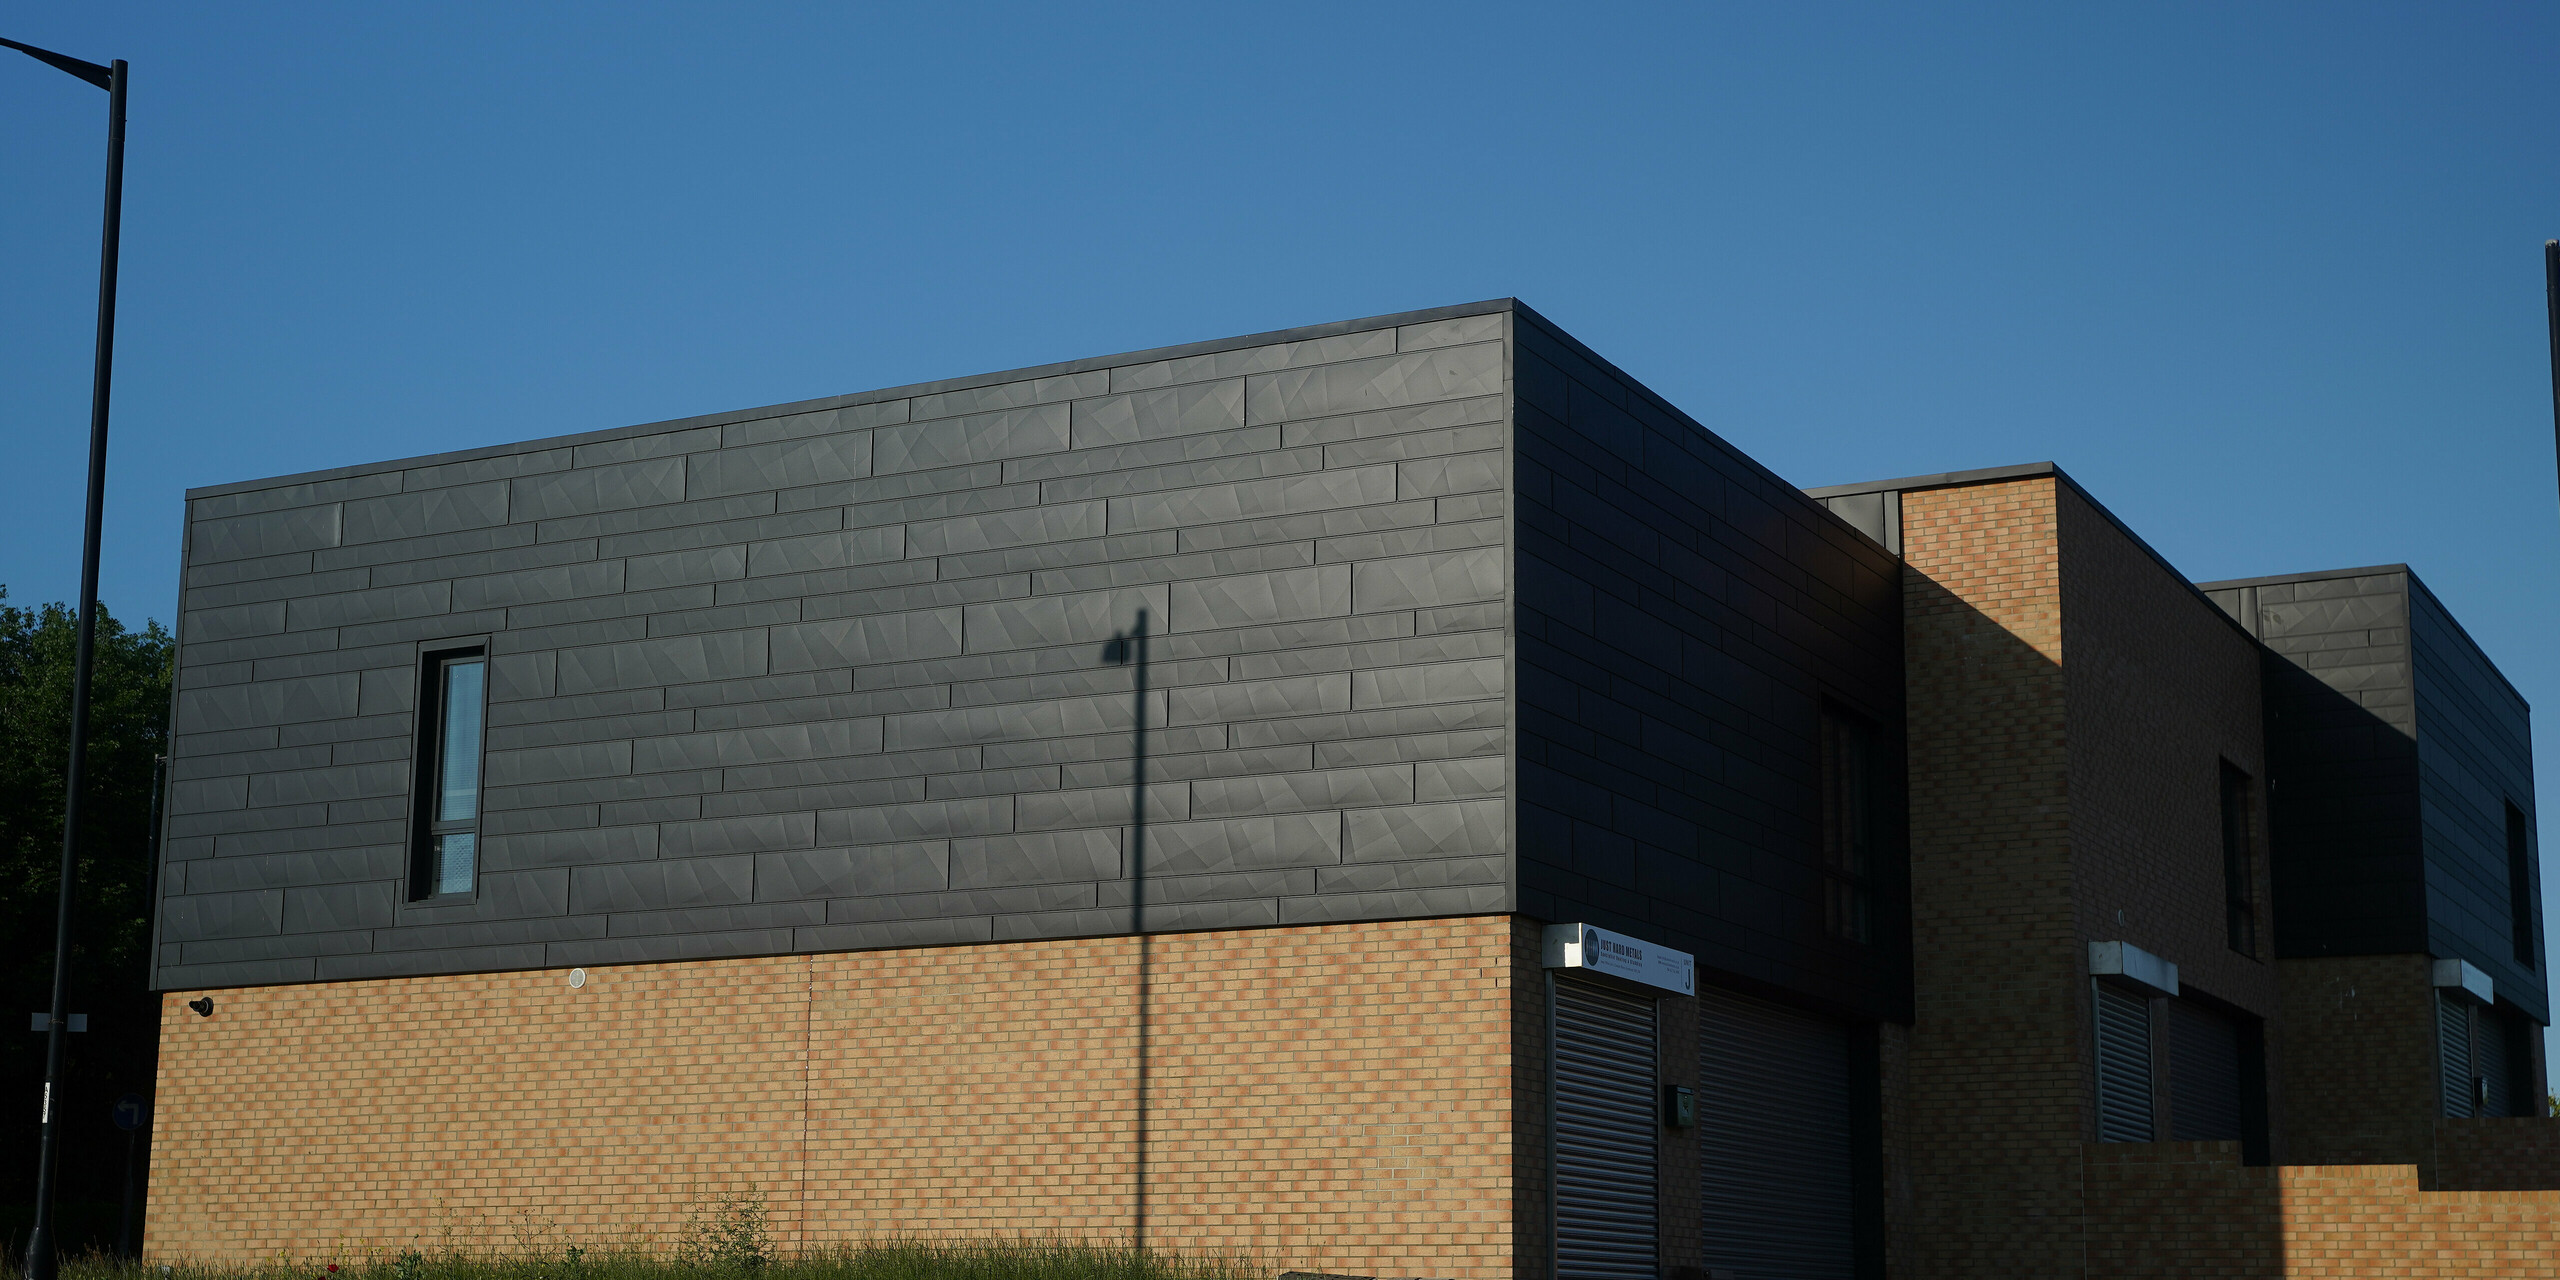 Firmengebäude in Sunderland mit Fassade aus PREFA Siding.X in P.10 Anthrazit und Ziegeln